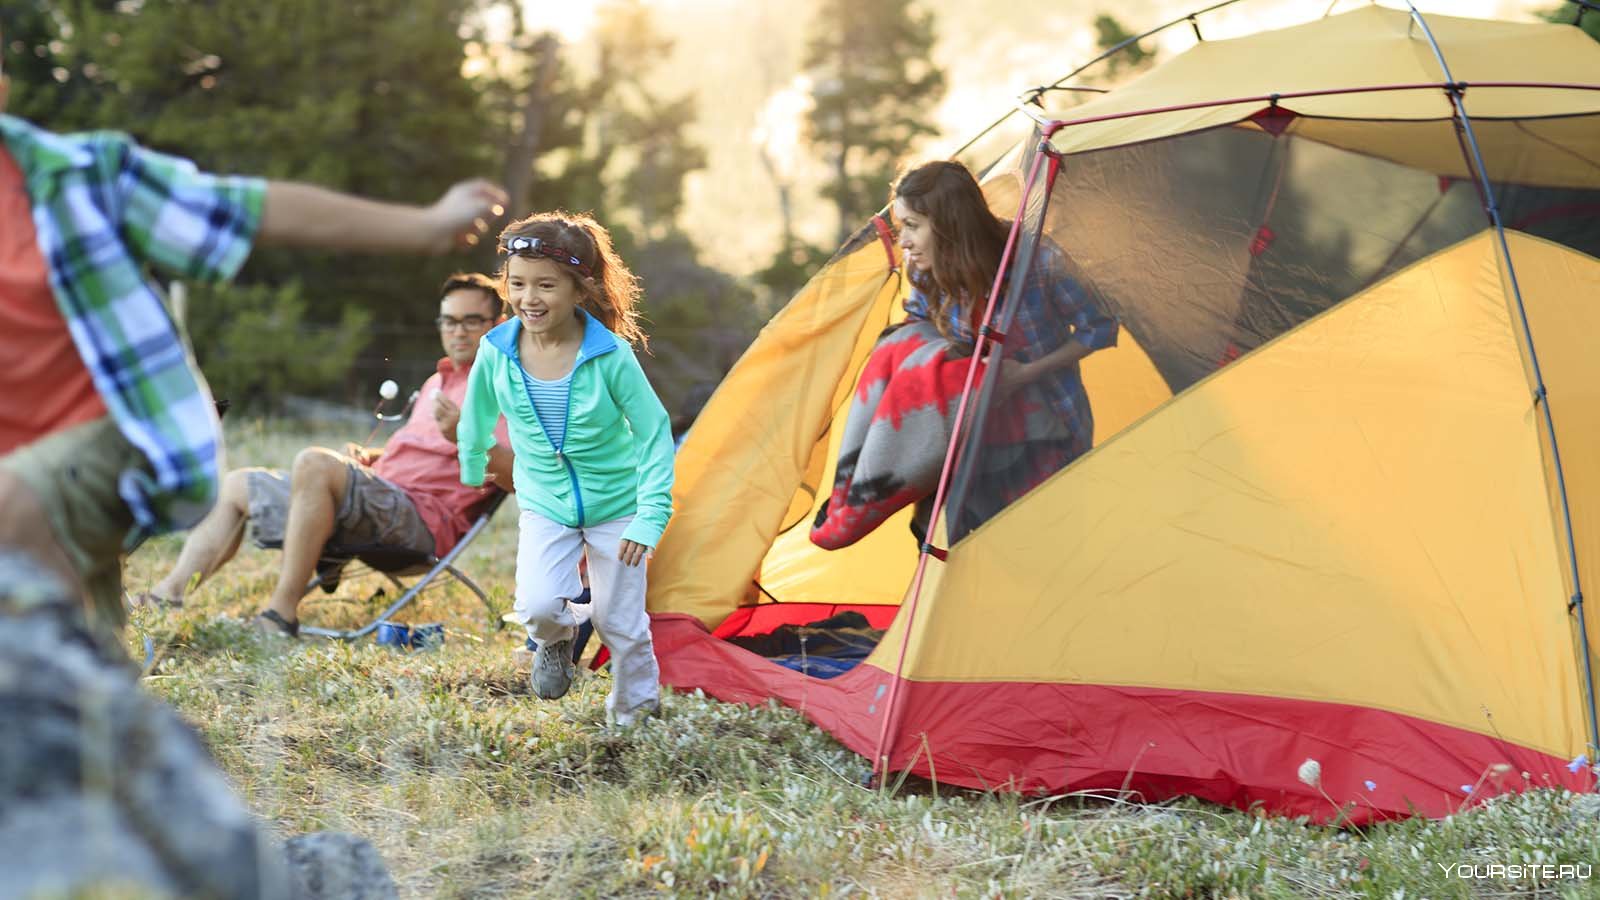 Палаточный лагерь - детский активный отдых на природе с палаткой